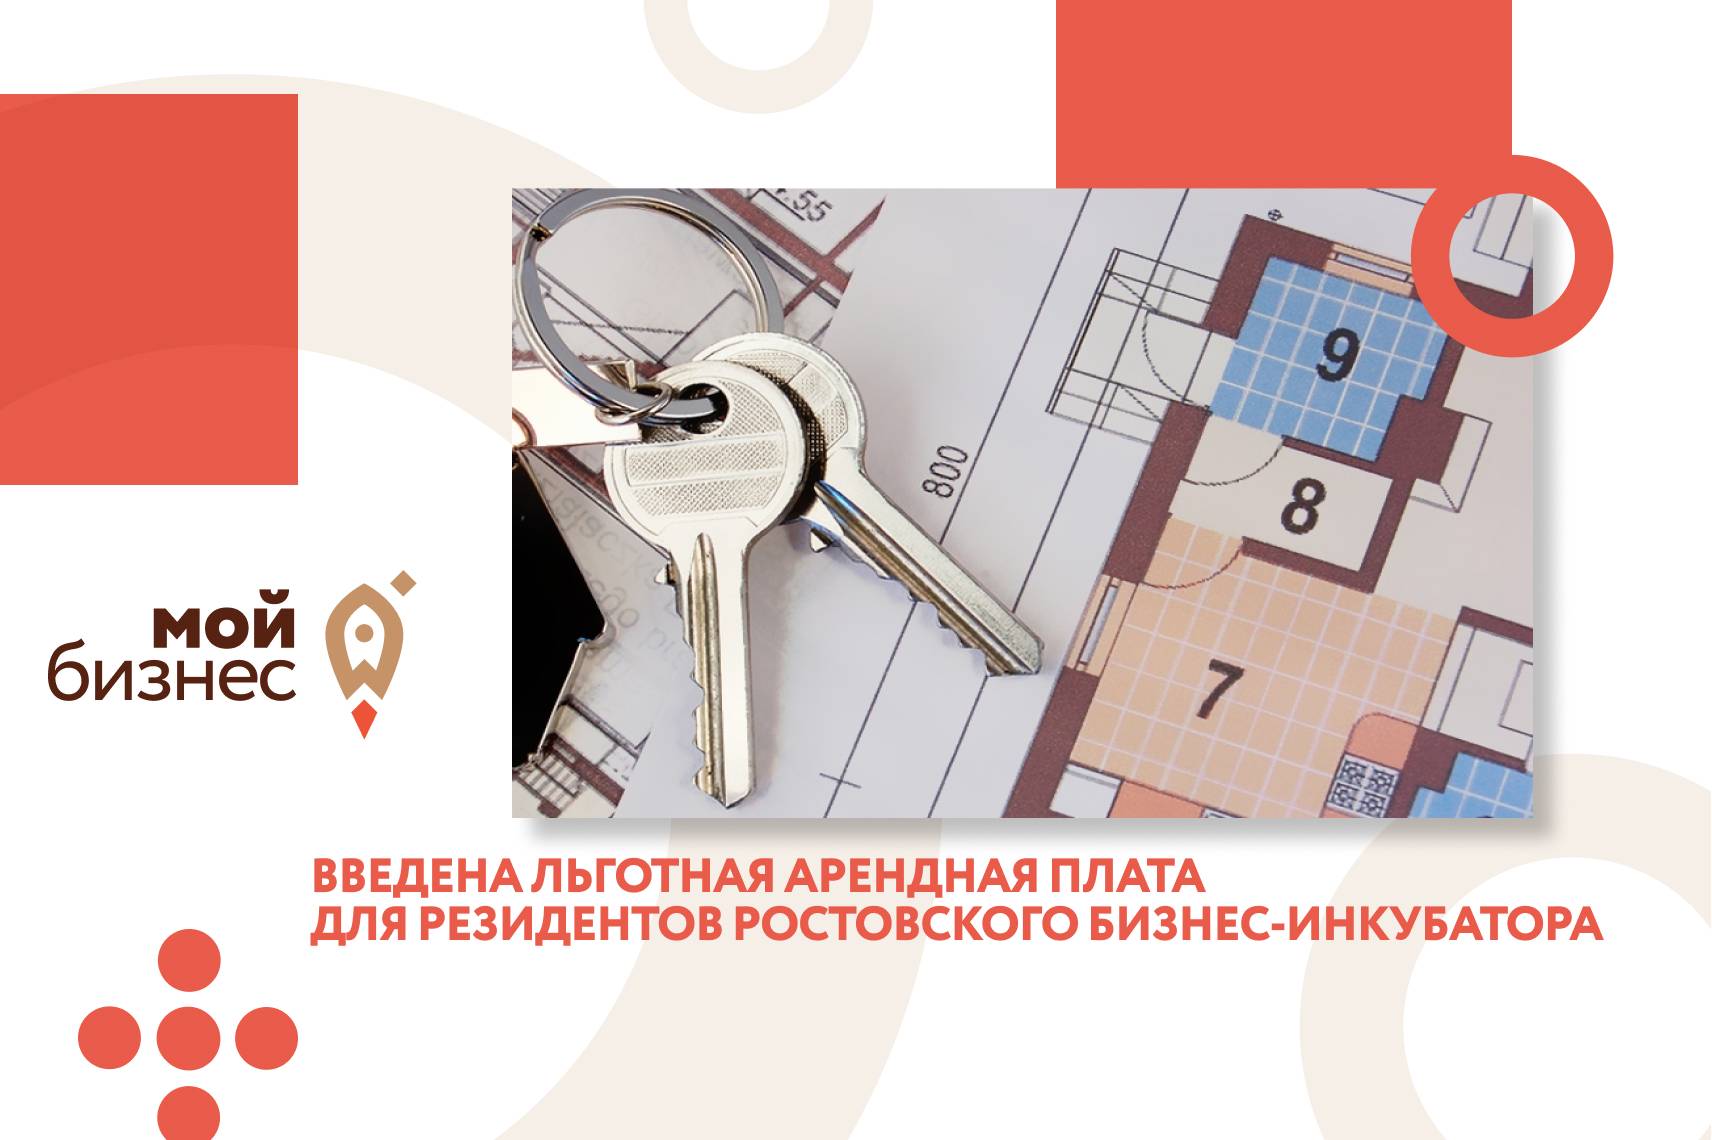 Для резидентов ростовского бизнес-инкубатора введена льготная арендная плата